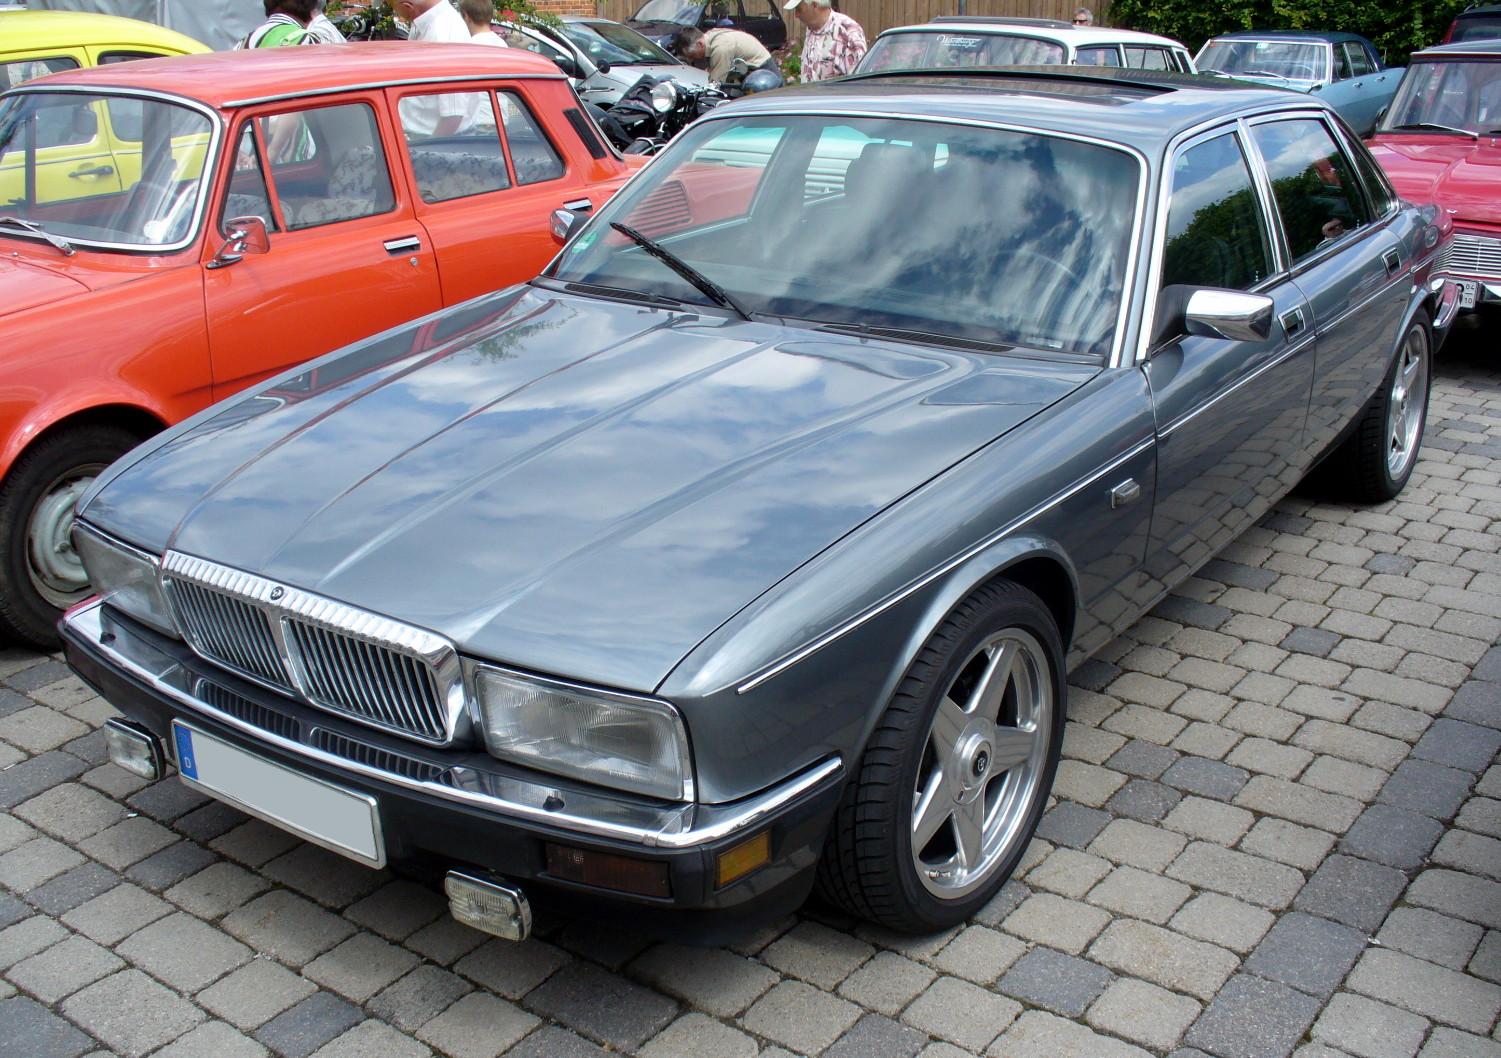 Daimler XJ40